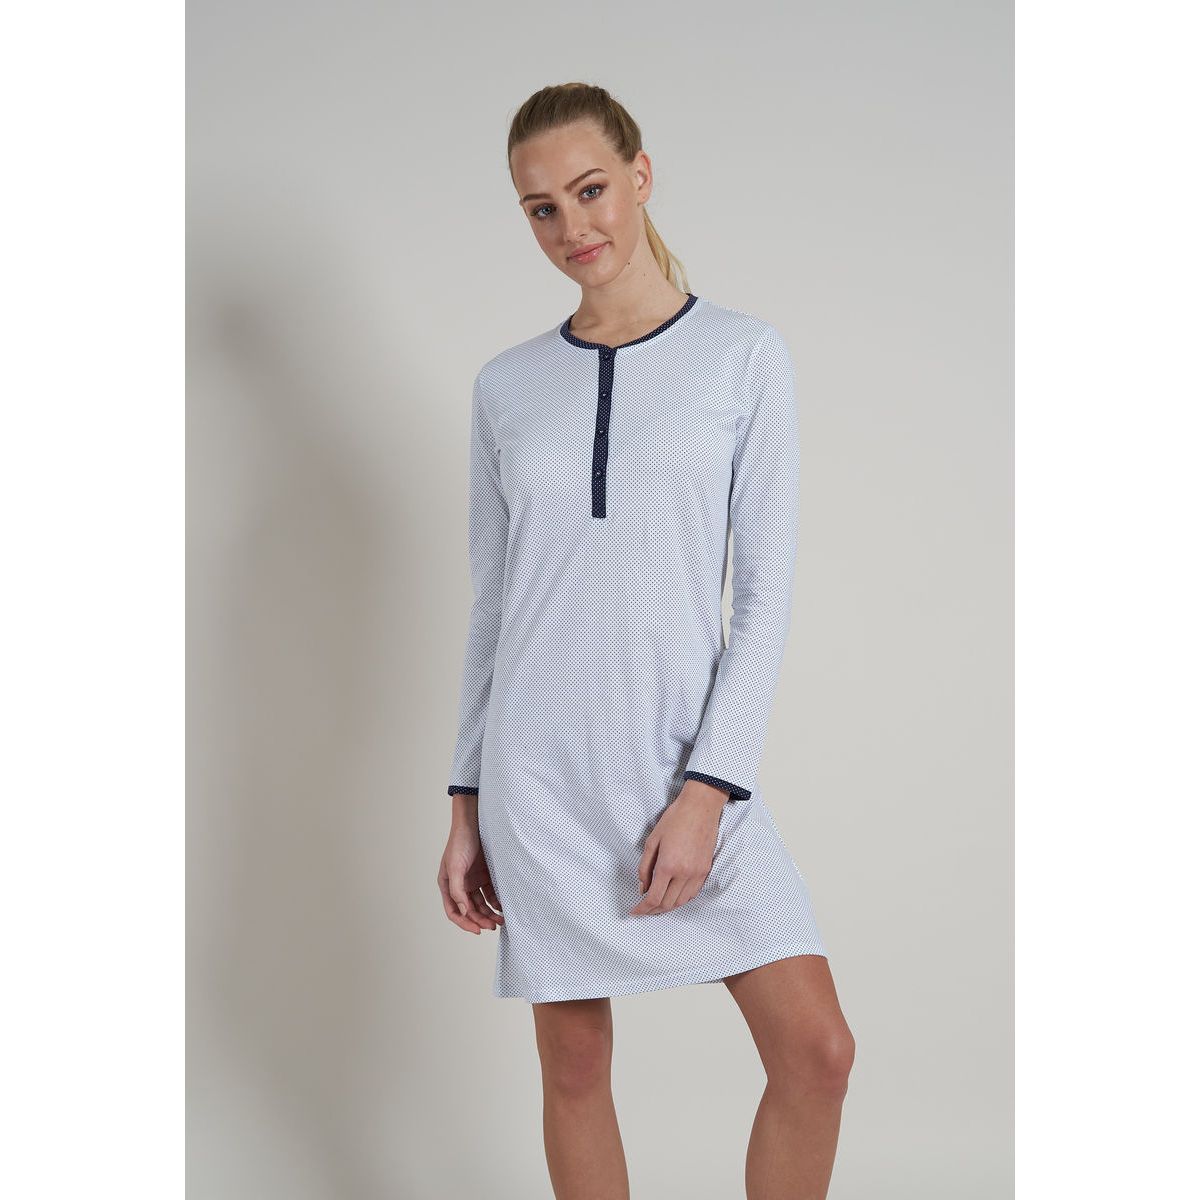 De nachthemden, grootste Gratis en meer mooiste Gratis nachthemd de | keuze Online | Götzburg stipjes retour ondermode wit verzending pyjama\'s, | |